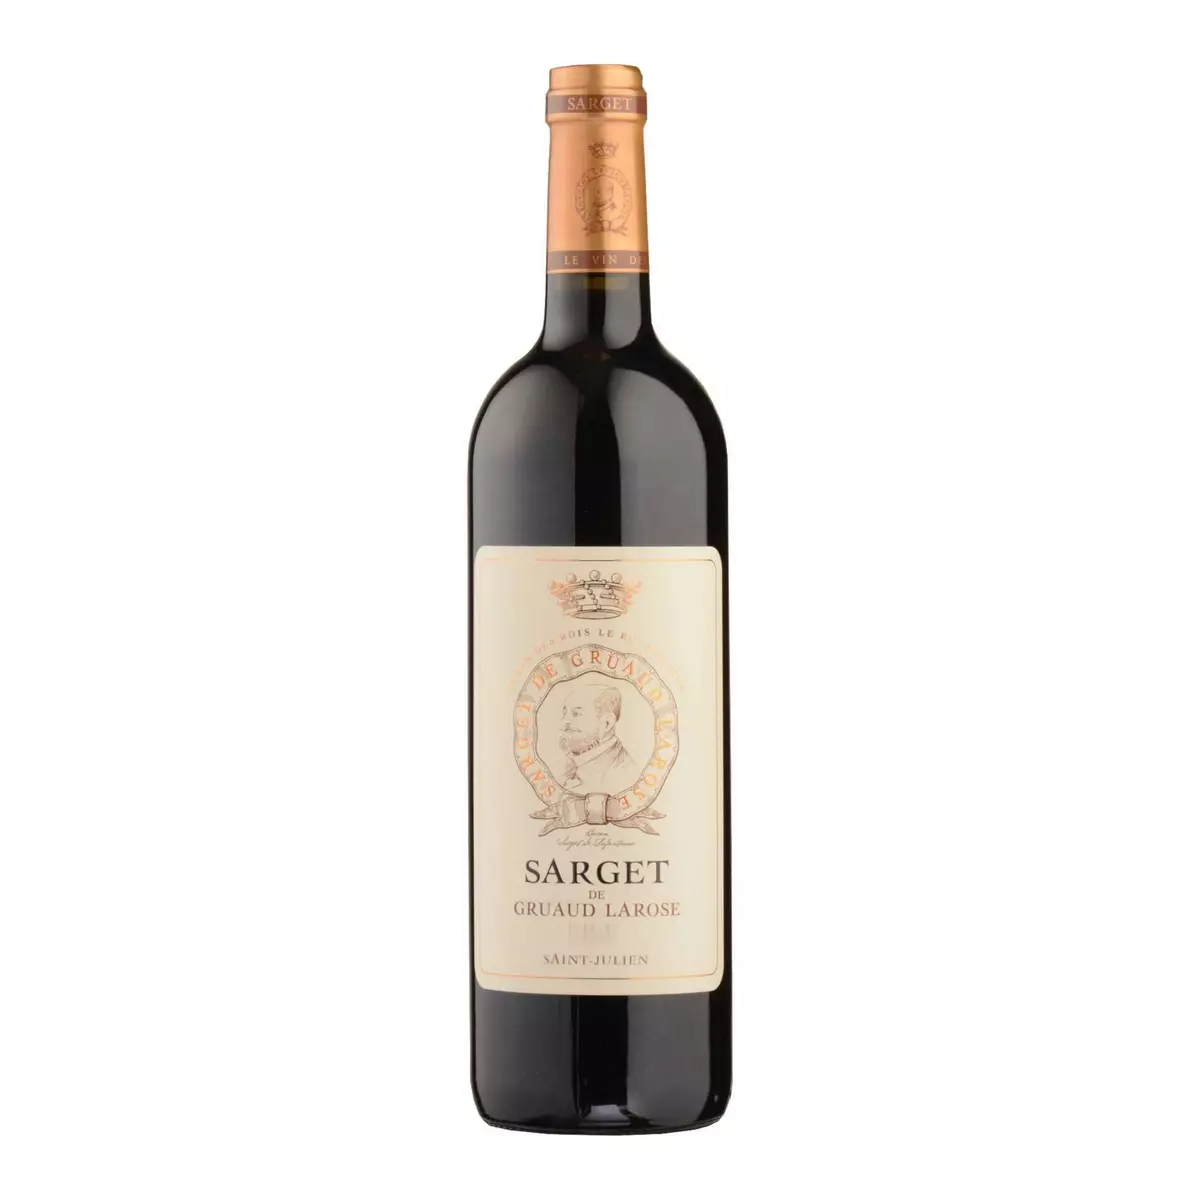 Vin rouge AOP Saint-Julien Sarget de Gruaud Larose 2018 75cl